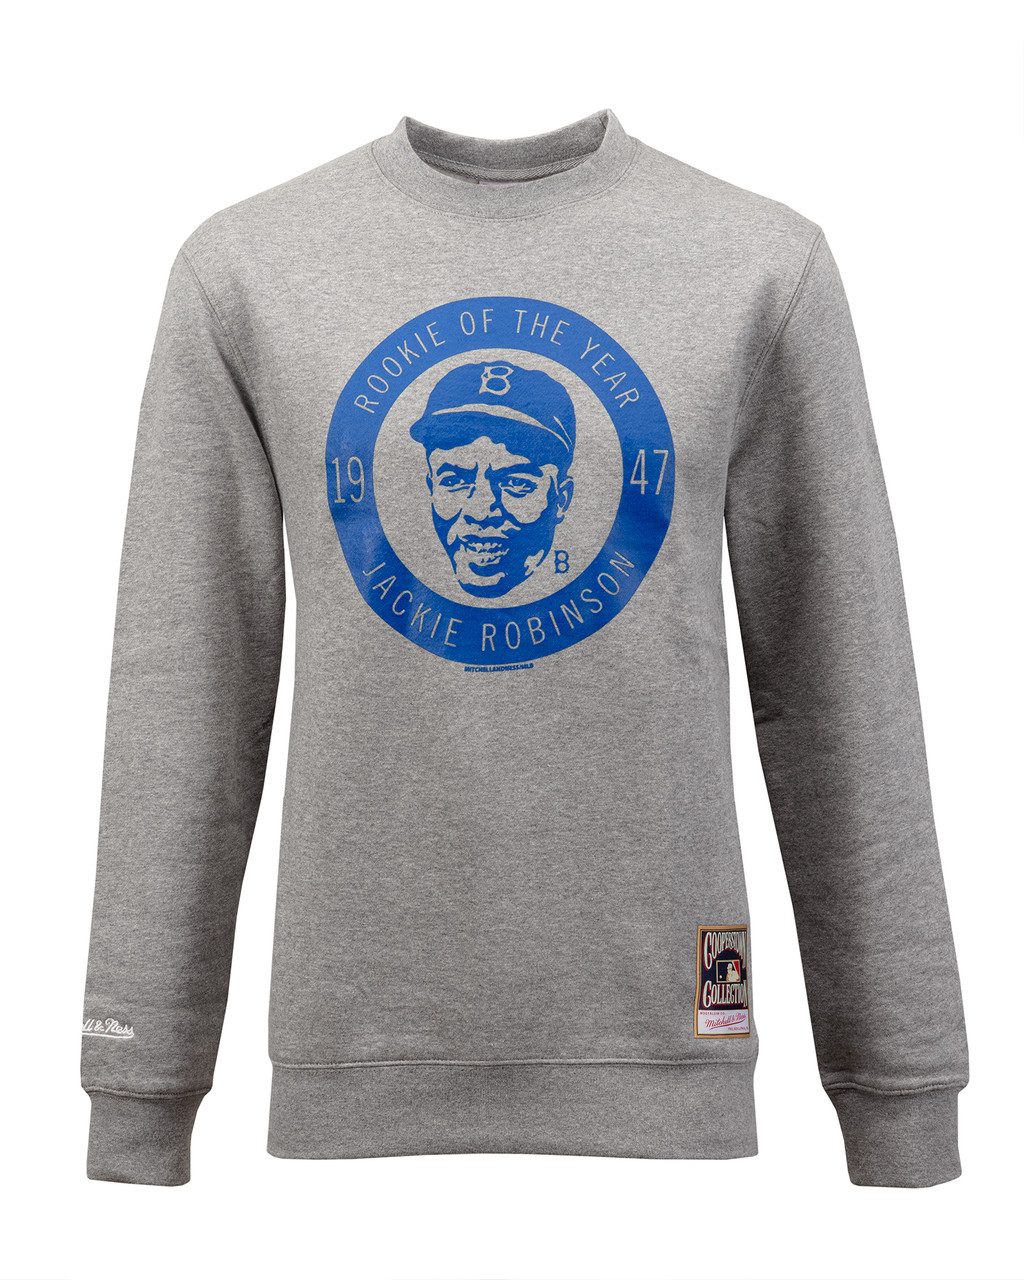 Breaking Barriers 42 Jackie Robinson 1919-1972 thank you for the memories  shirt, hoodie, longsleeve, sweatshirt, v-neck tee